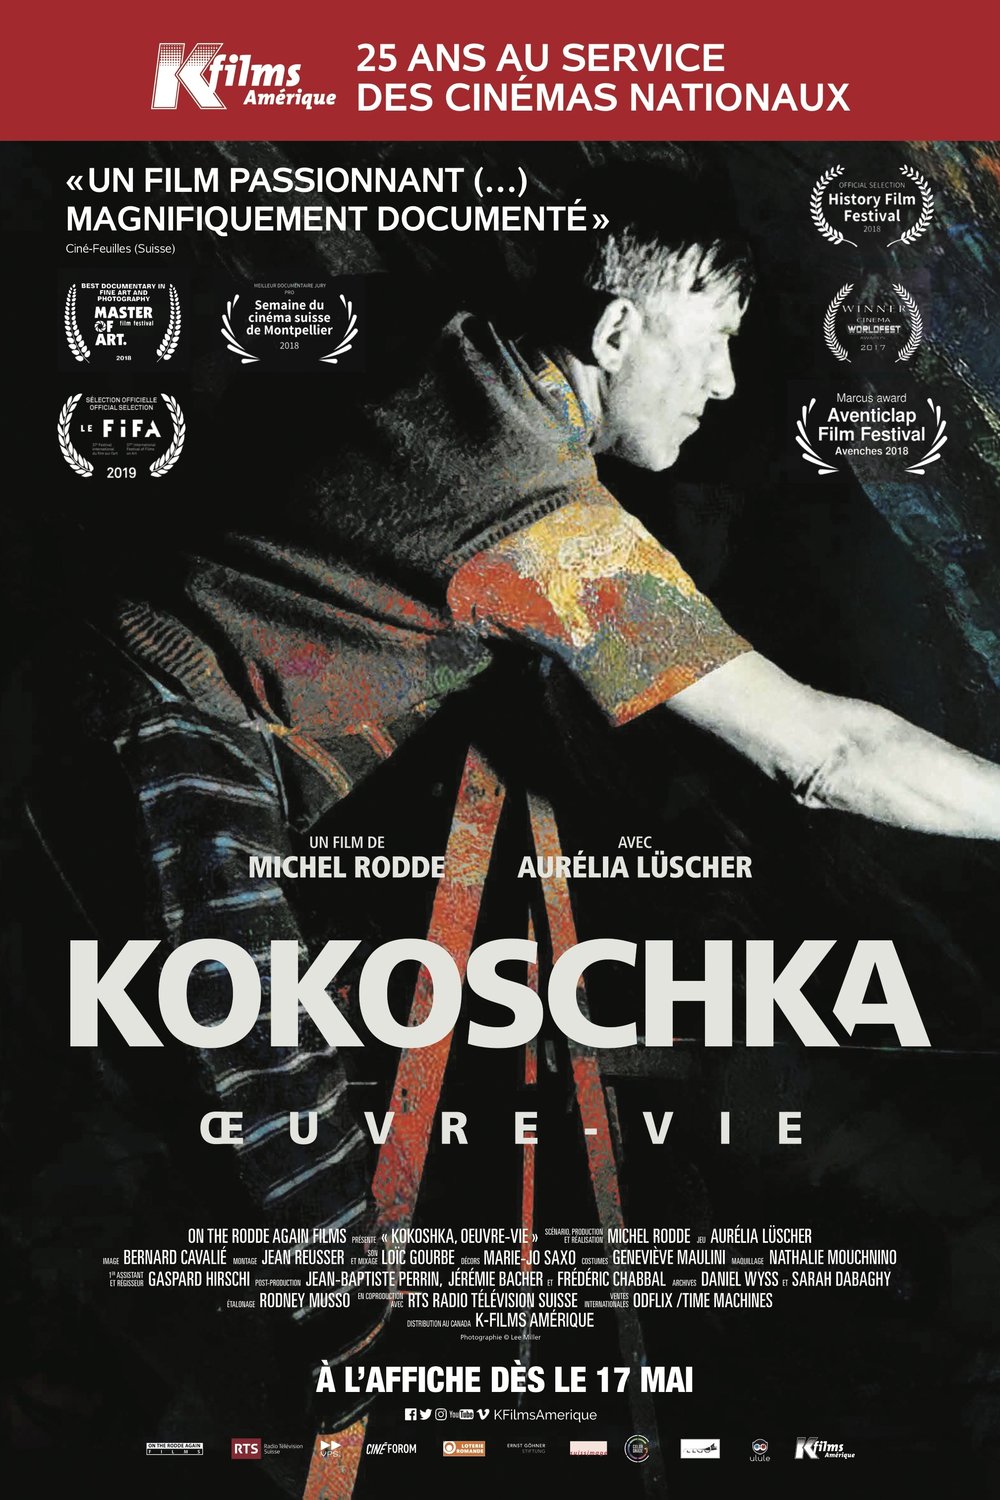 Poster of the movie Kokoschka, Life's Work